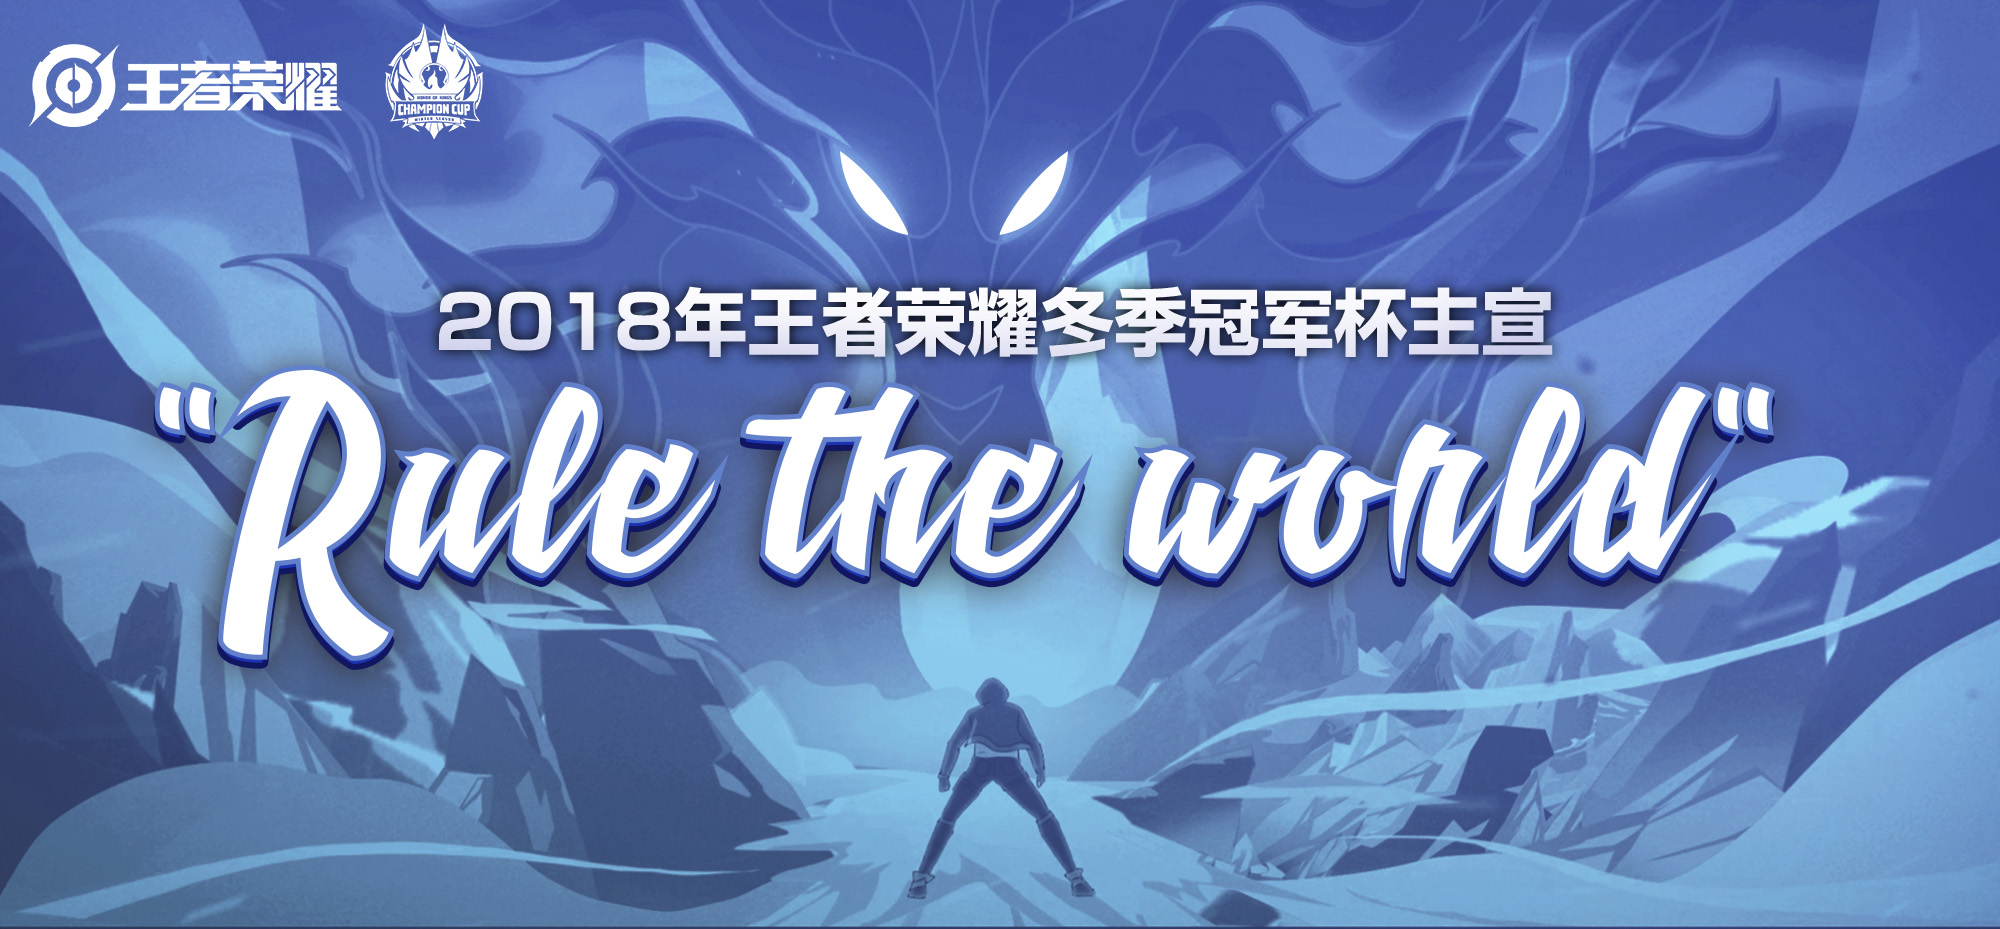 2018年王者荣耀冬季冠军杯主宣传片《Rule the World》